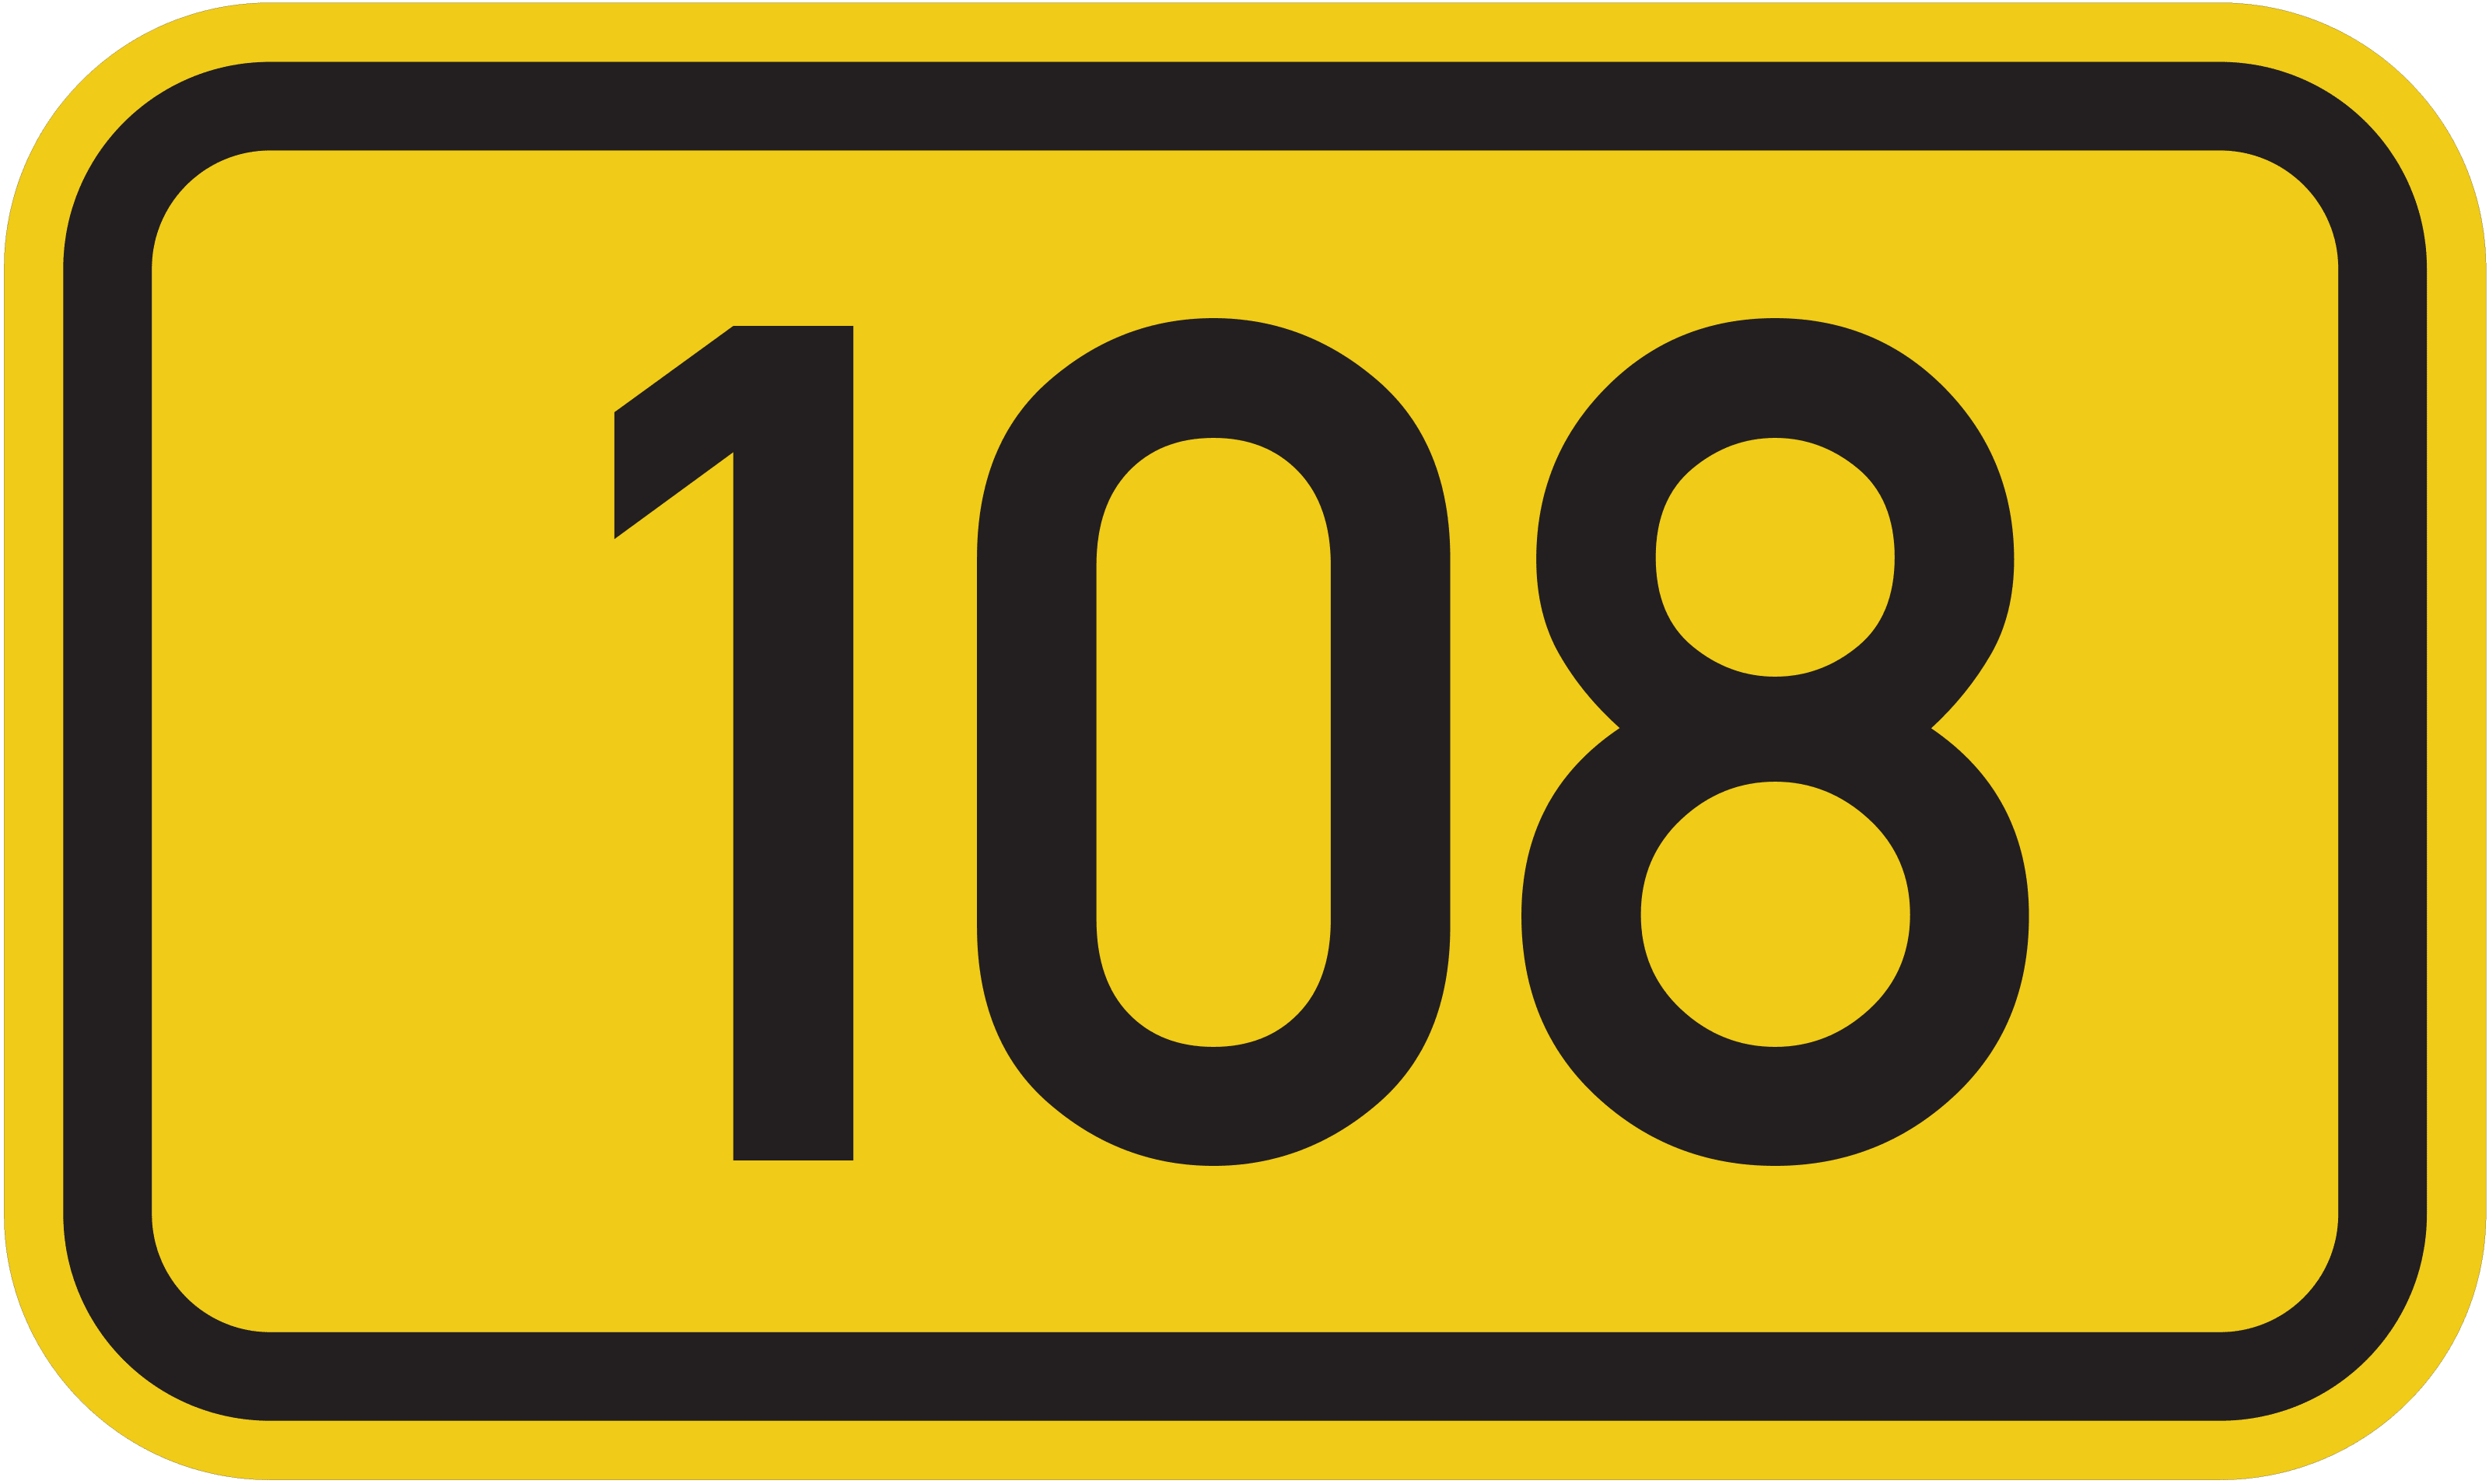 Bundesstraße B 108